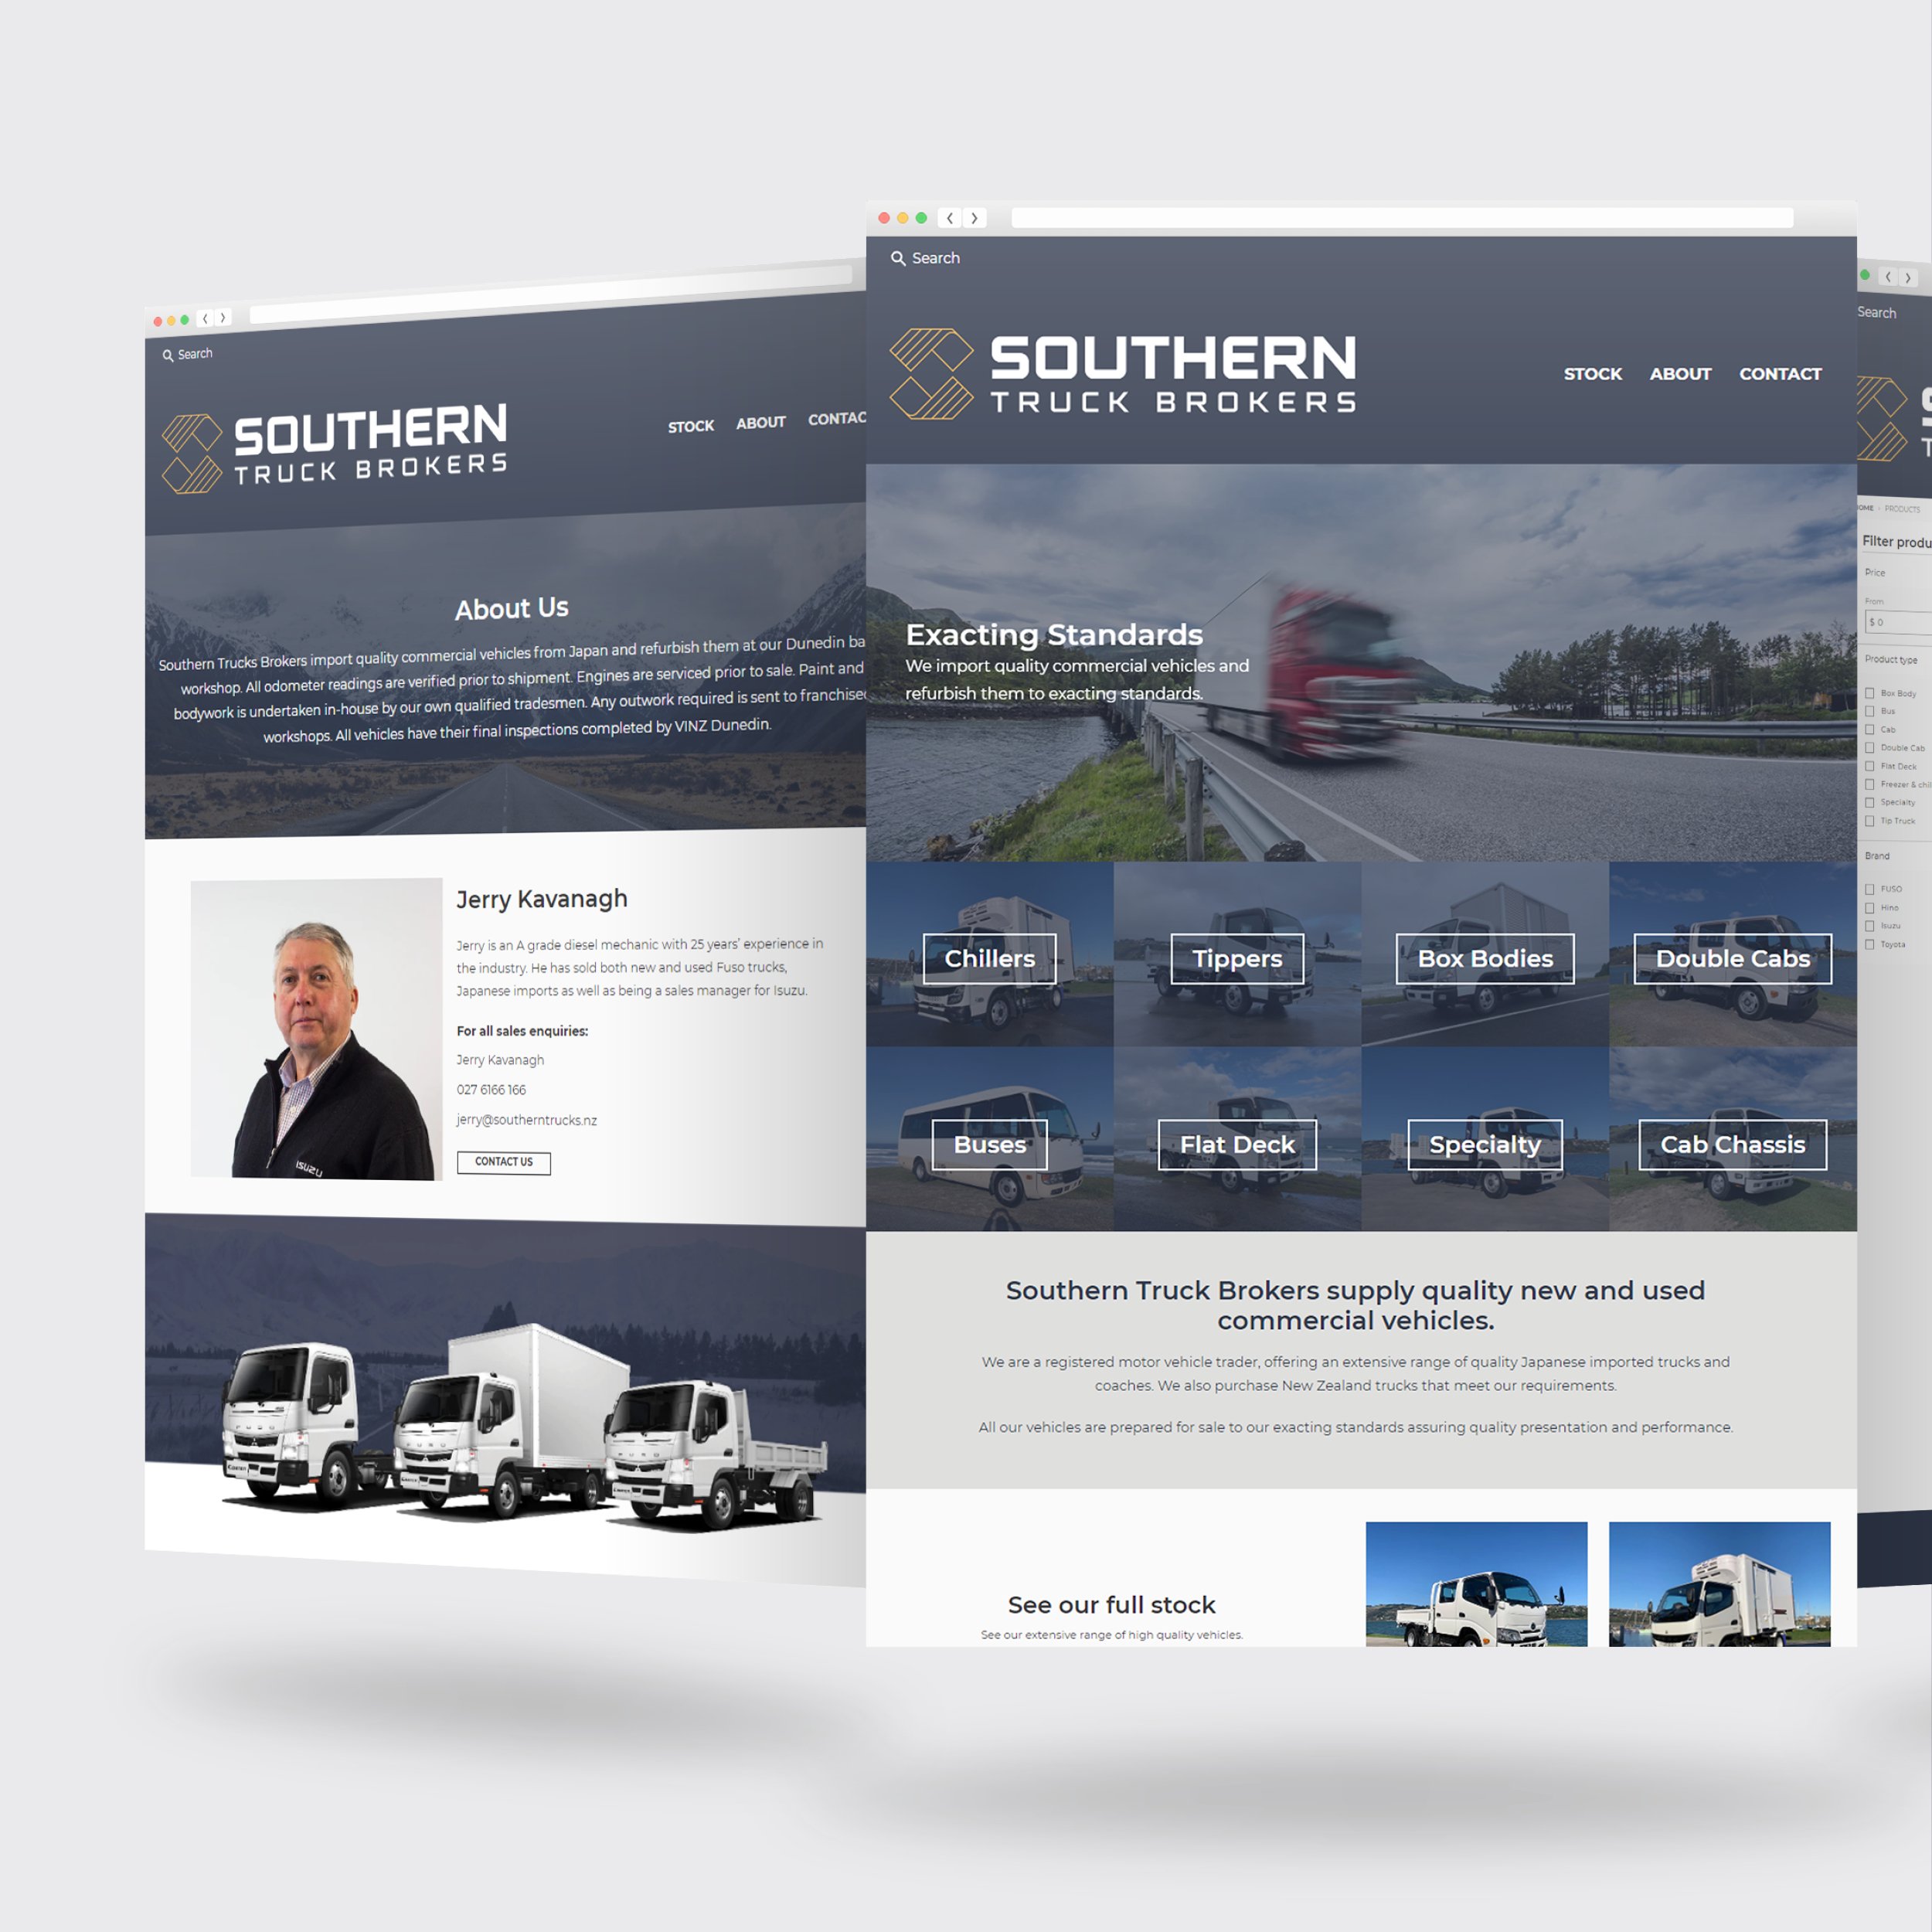 Southern Trucks - Brand Slides2.jpg